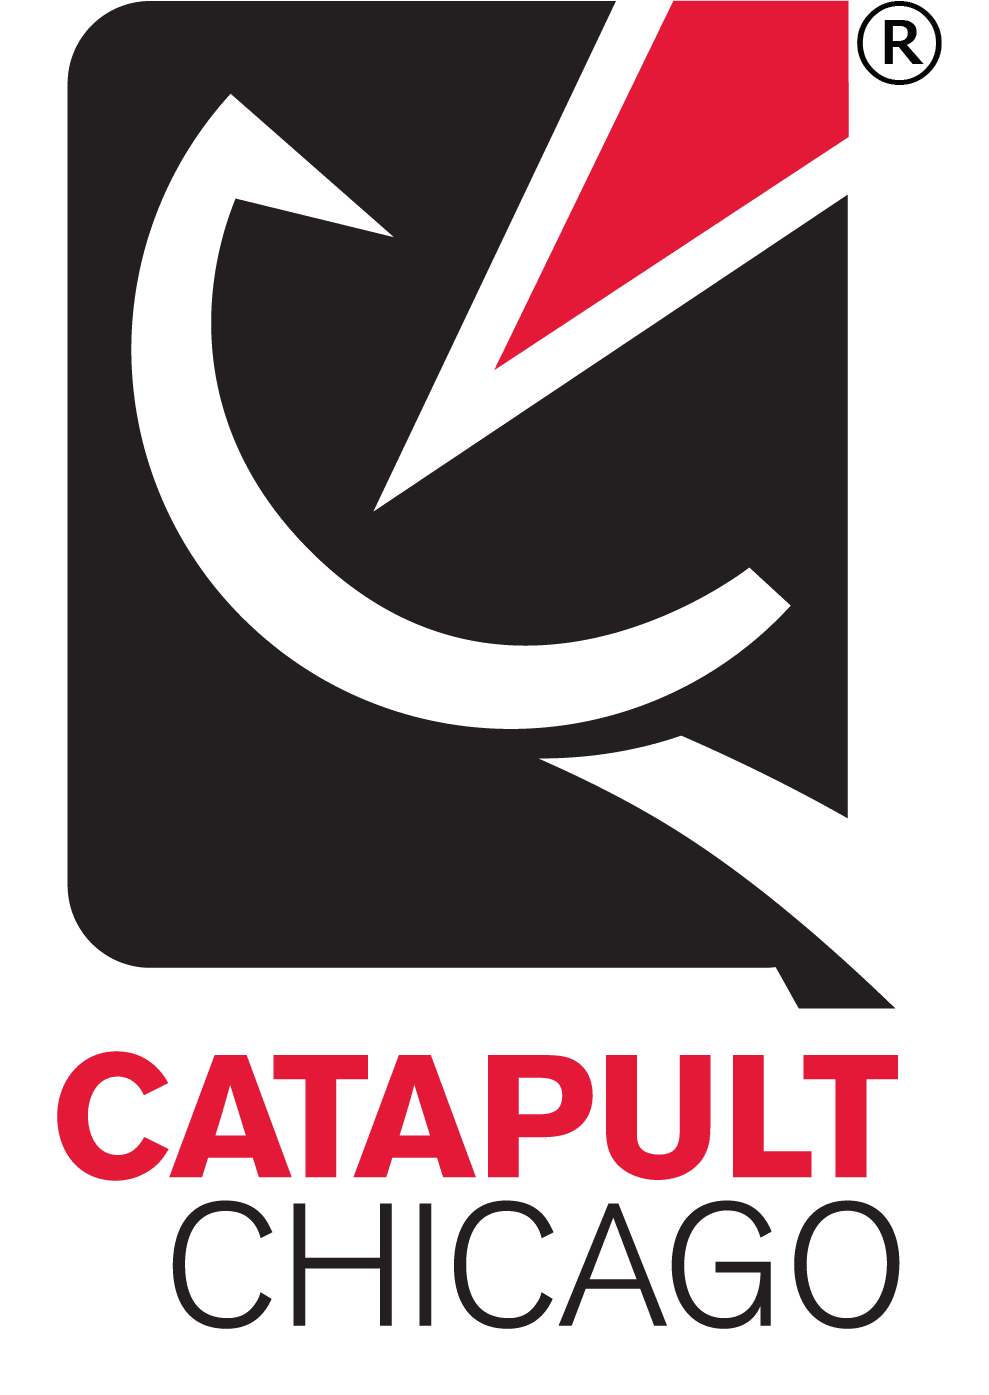 Catapult Chicago logo